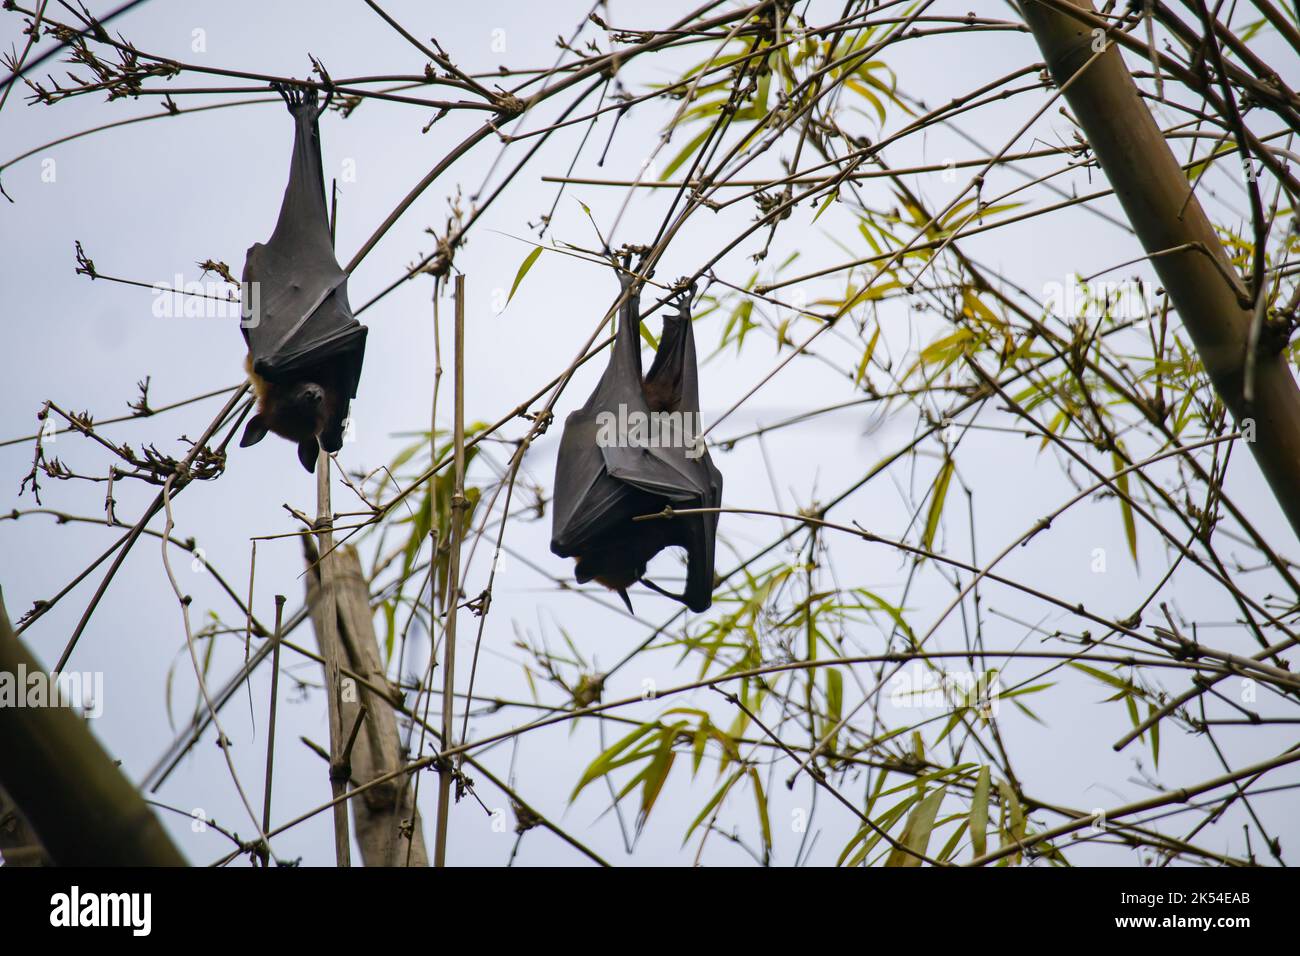 pipistrelli di frutta nera che pendono a testa in giù dai rami dell'albero in kolkata. questi animali notturni dormono in questa posizione di giorno. Foto Stock